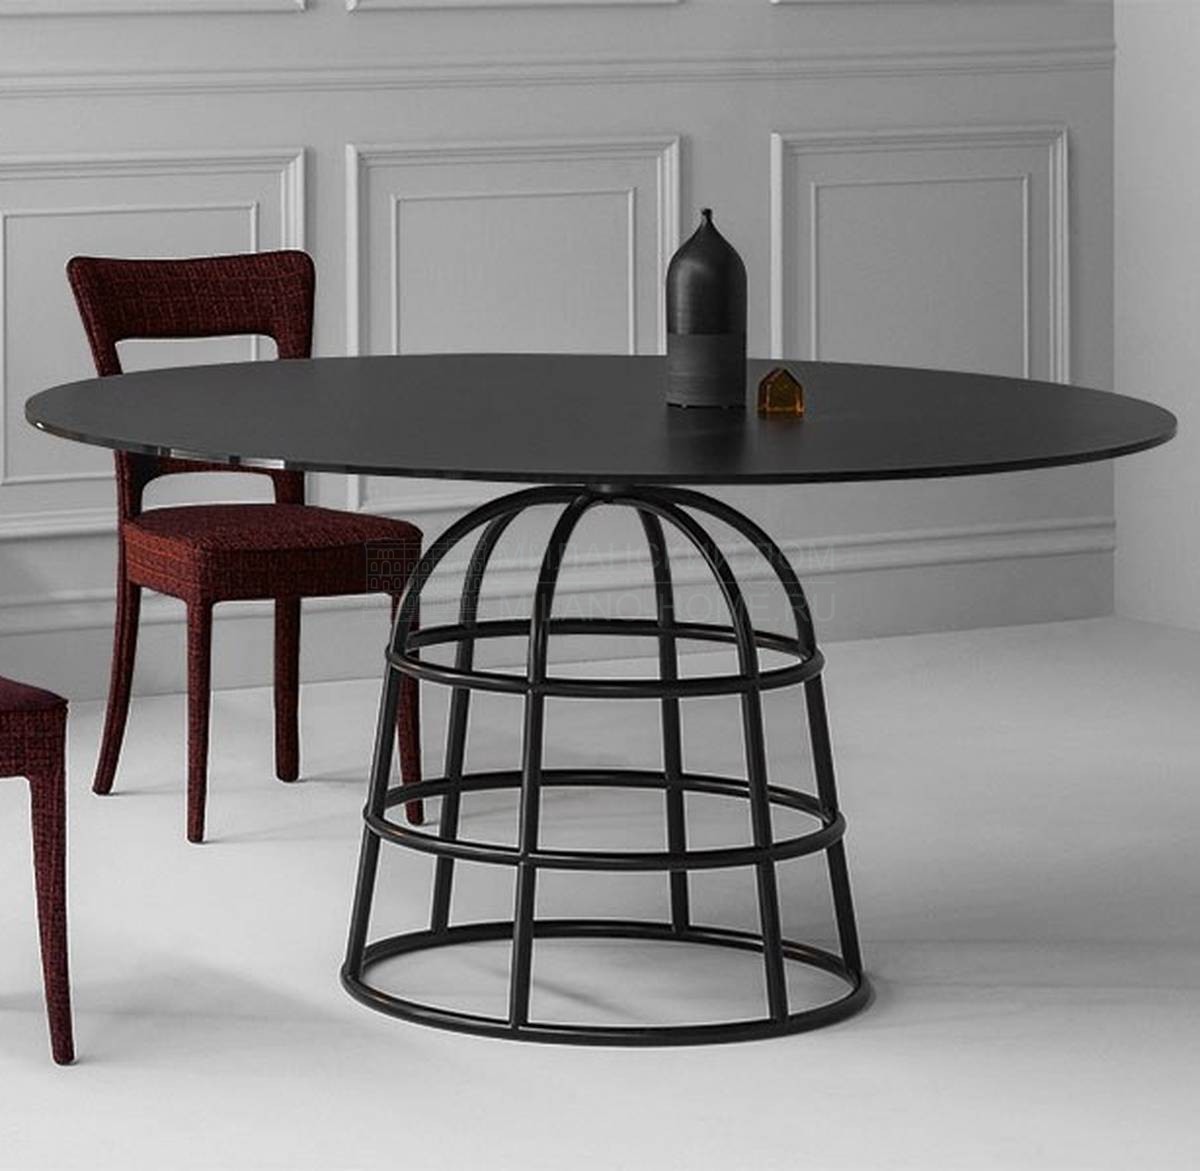 Круглый стол Mass Table из Италии фабрики BONALDO